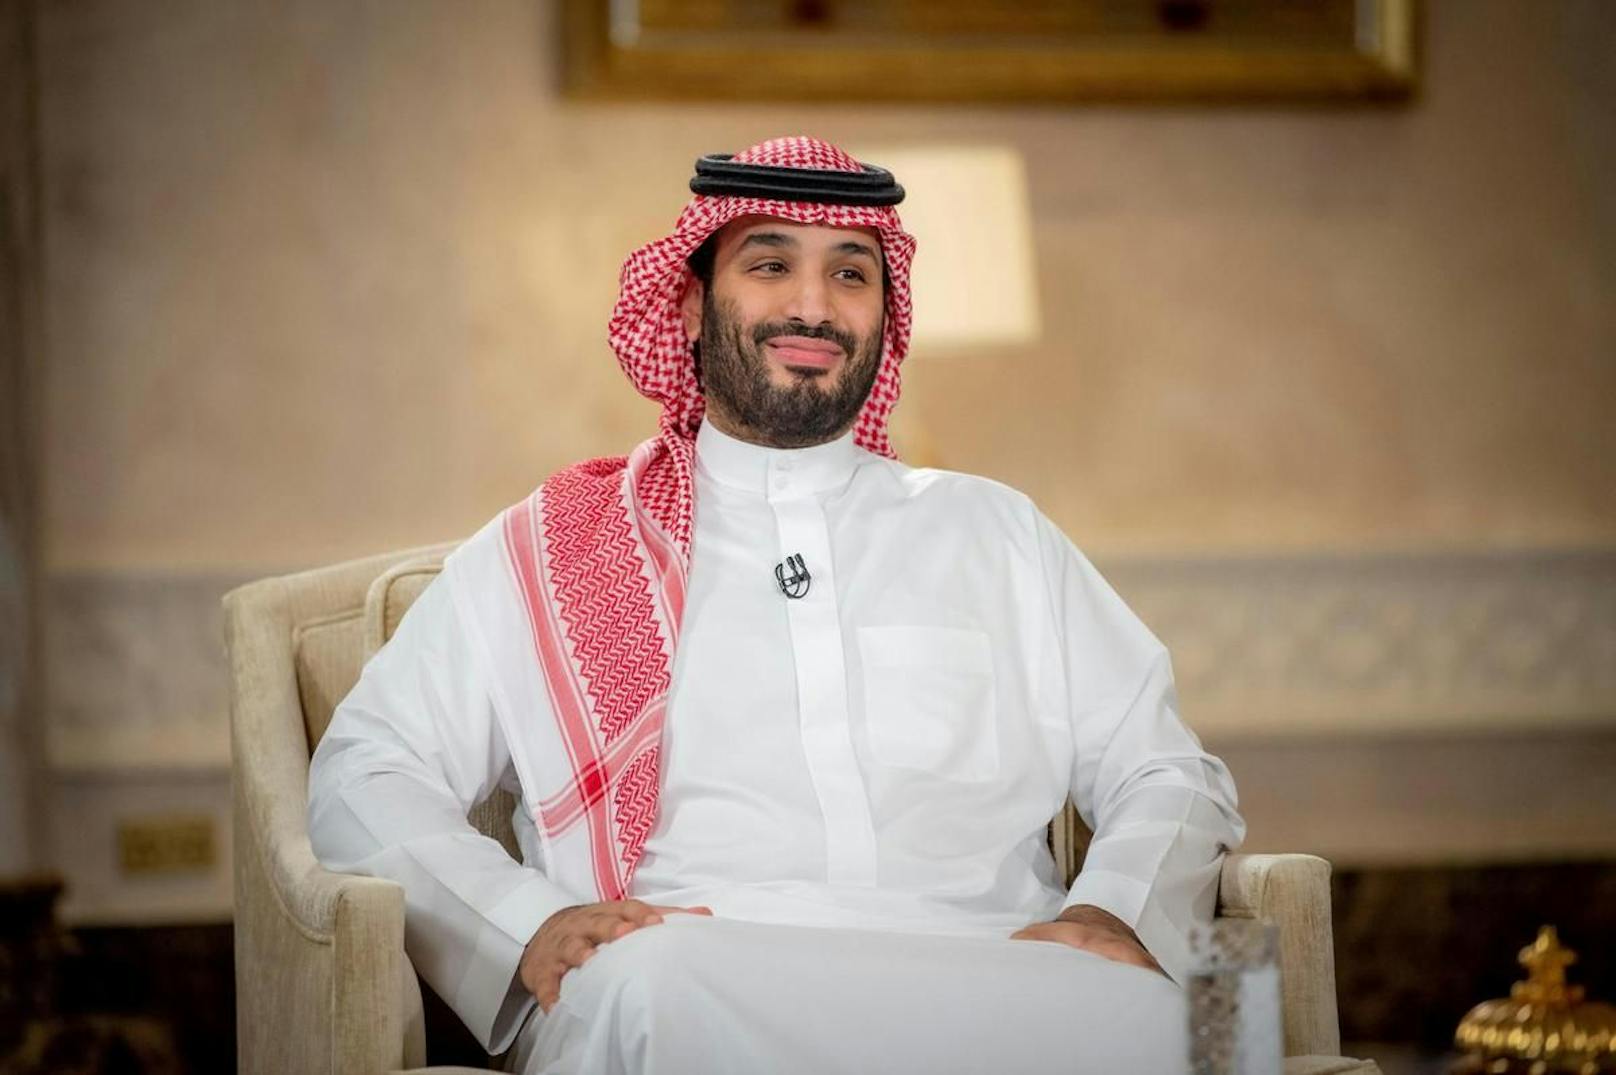 Saudiarabien richtet so viele Menschen hin, wie fast kein anderes Land. Kronprinz Mohammed bin Salman will dies laut eigenen Angaben ändern.